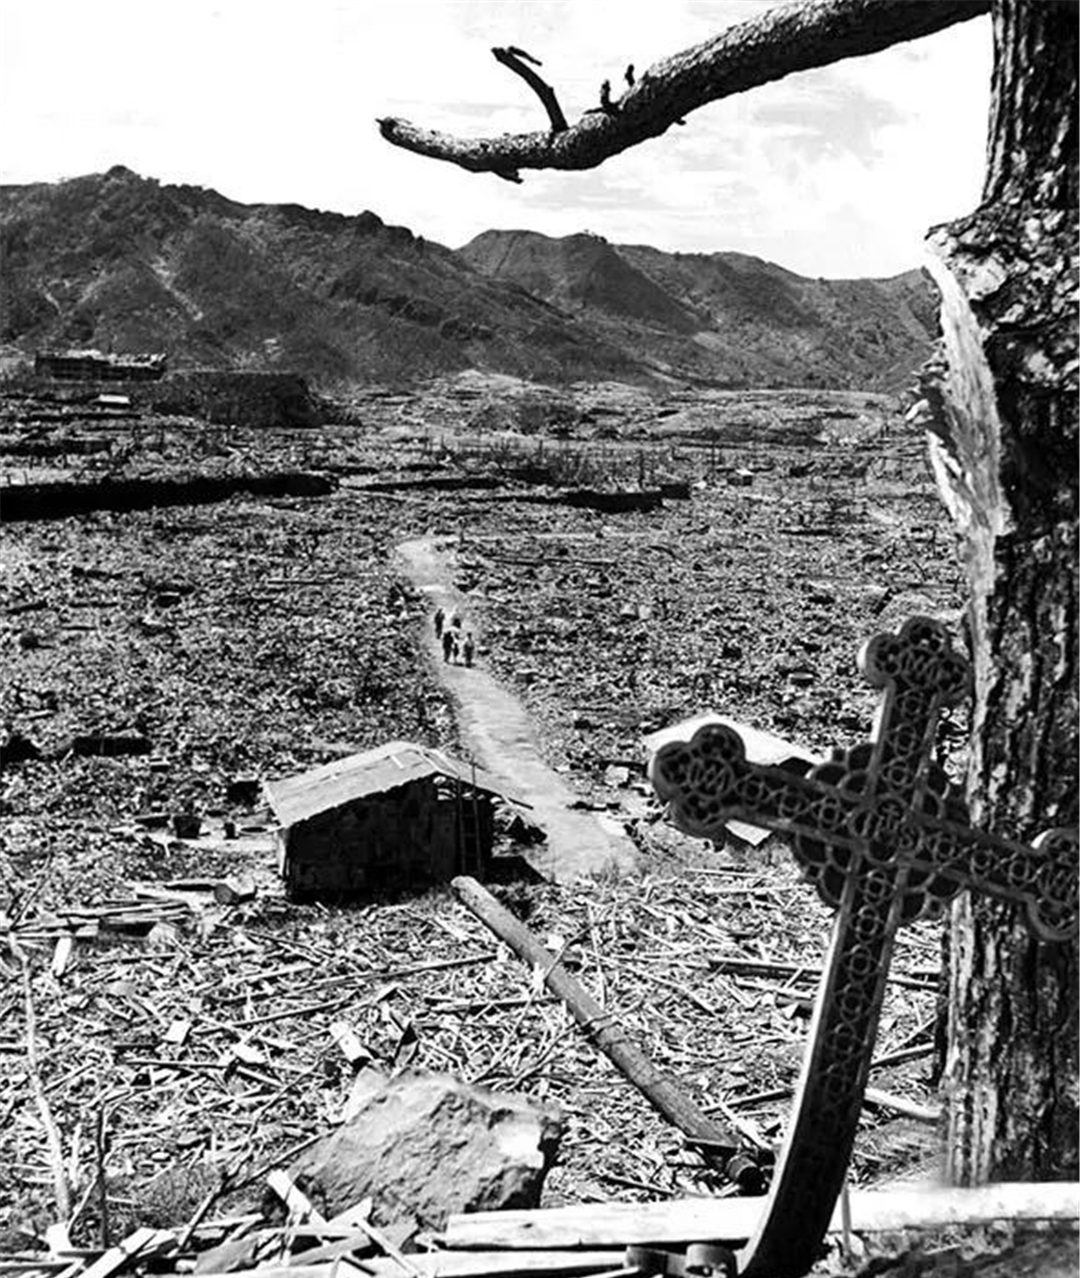 老照片:1945年9月,长崎,十字架被原子弹爆炸炸出了大教堂,从这里可